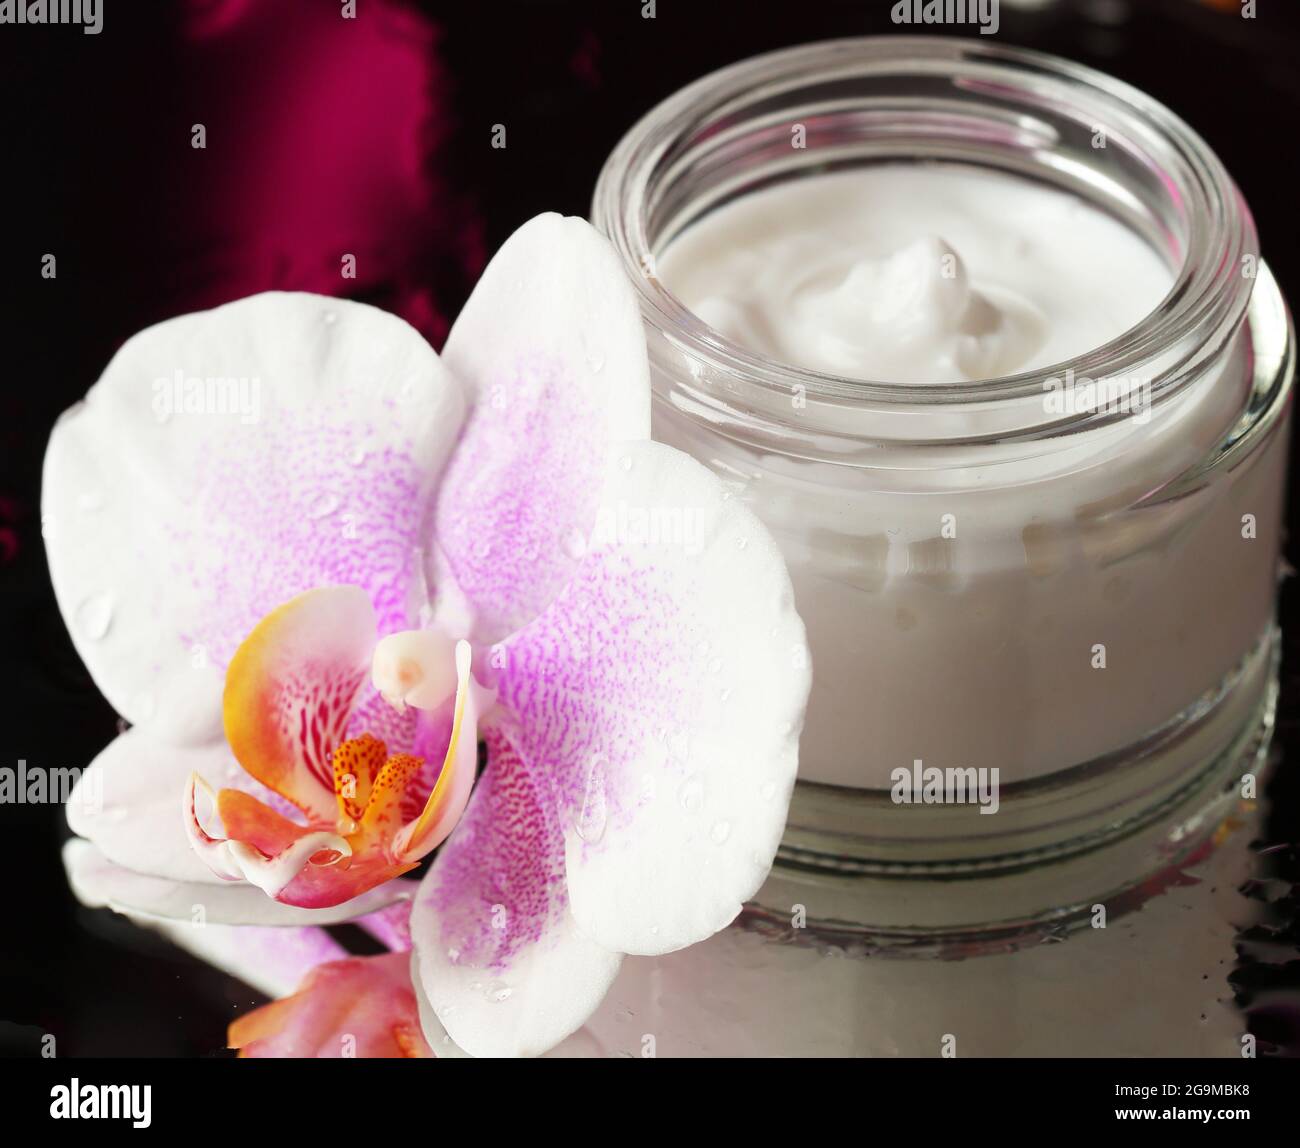 Crème pour le visage avec fleurs d'orchidée sur fond sombre Photo Stock -  Alamy